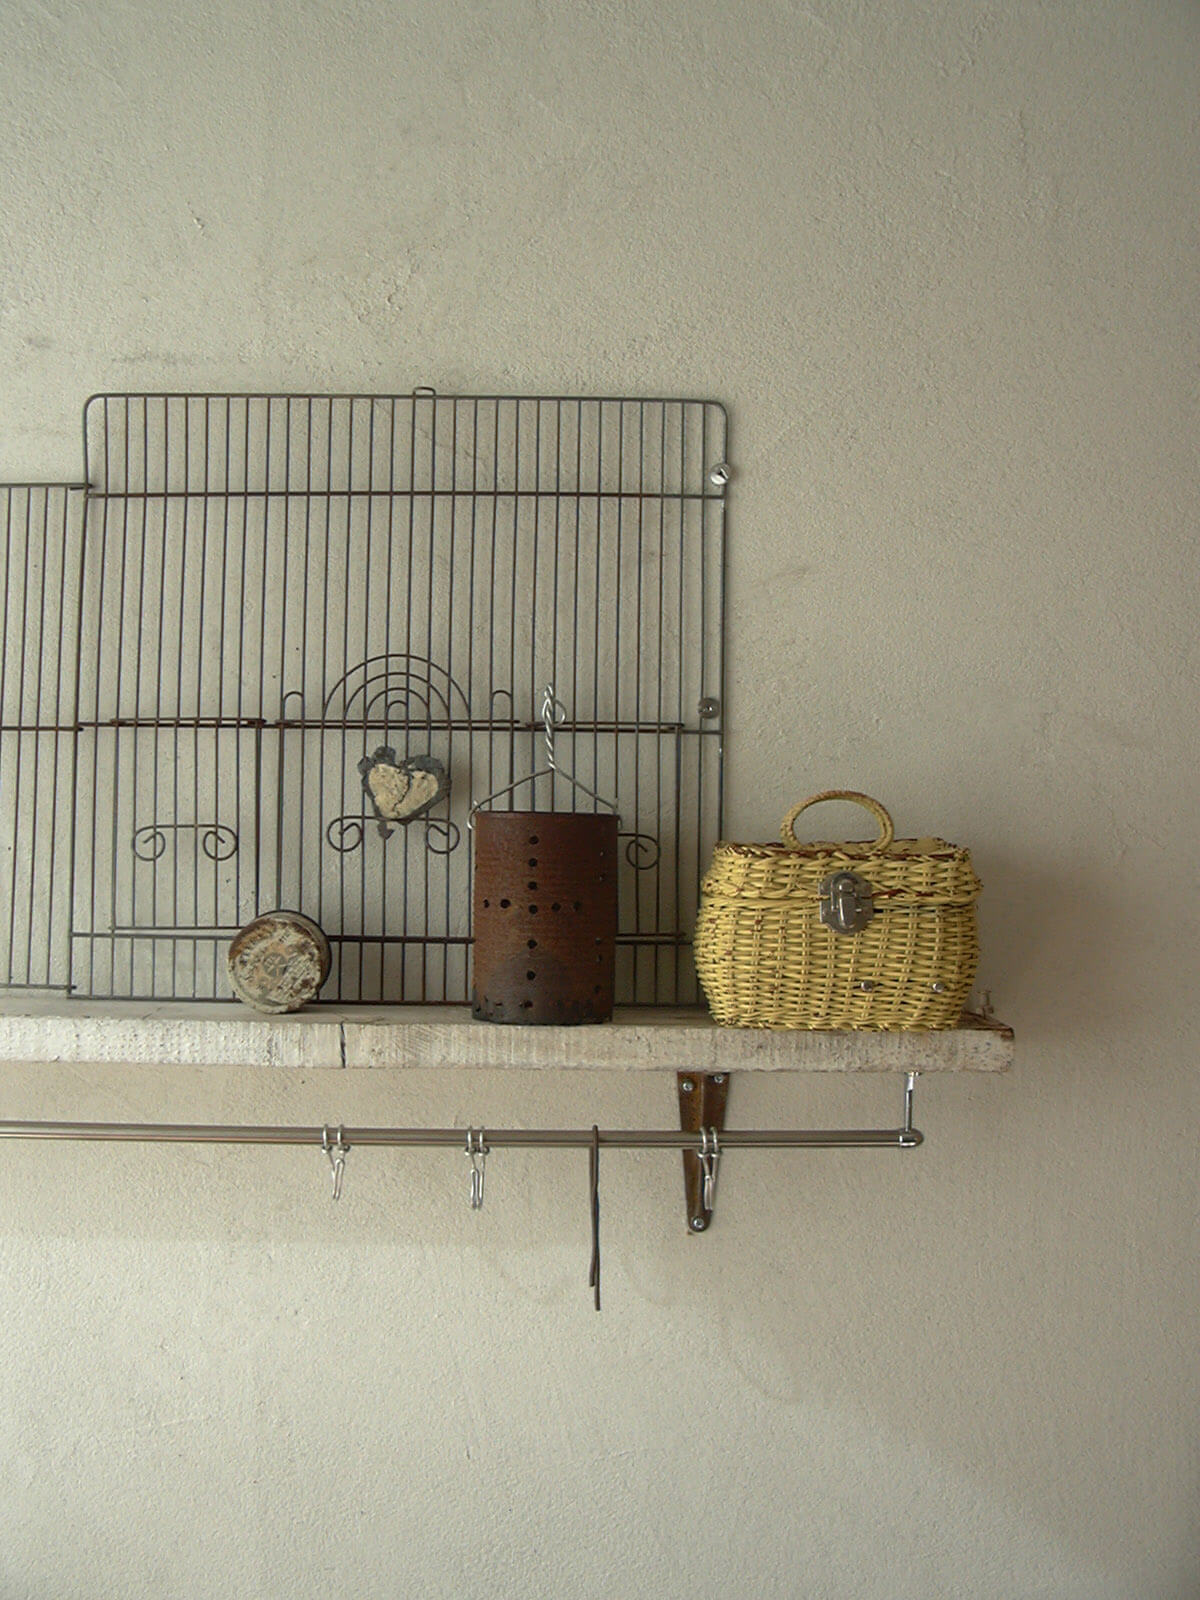 下には金属の棒にフックが掛けられ、上には鳥かごの網、籐のカゴ、金属の缶が置かれている白い壁に取り付けられた棚